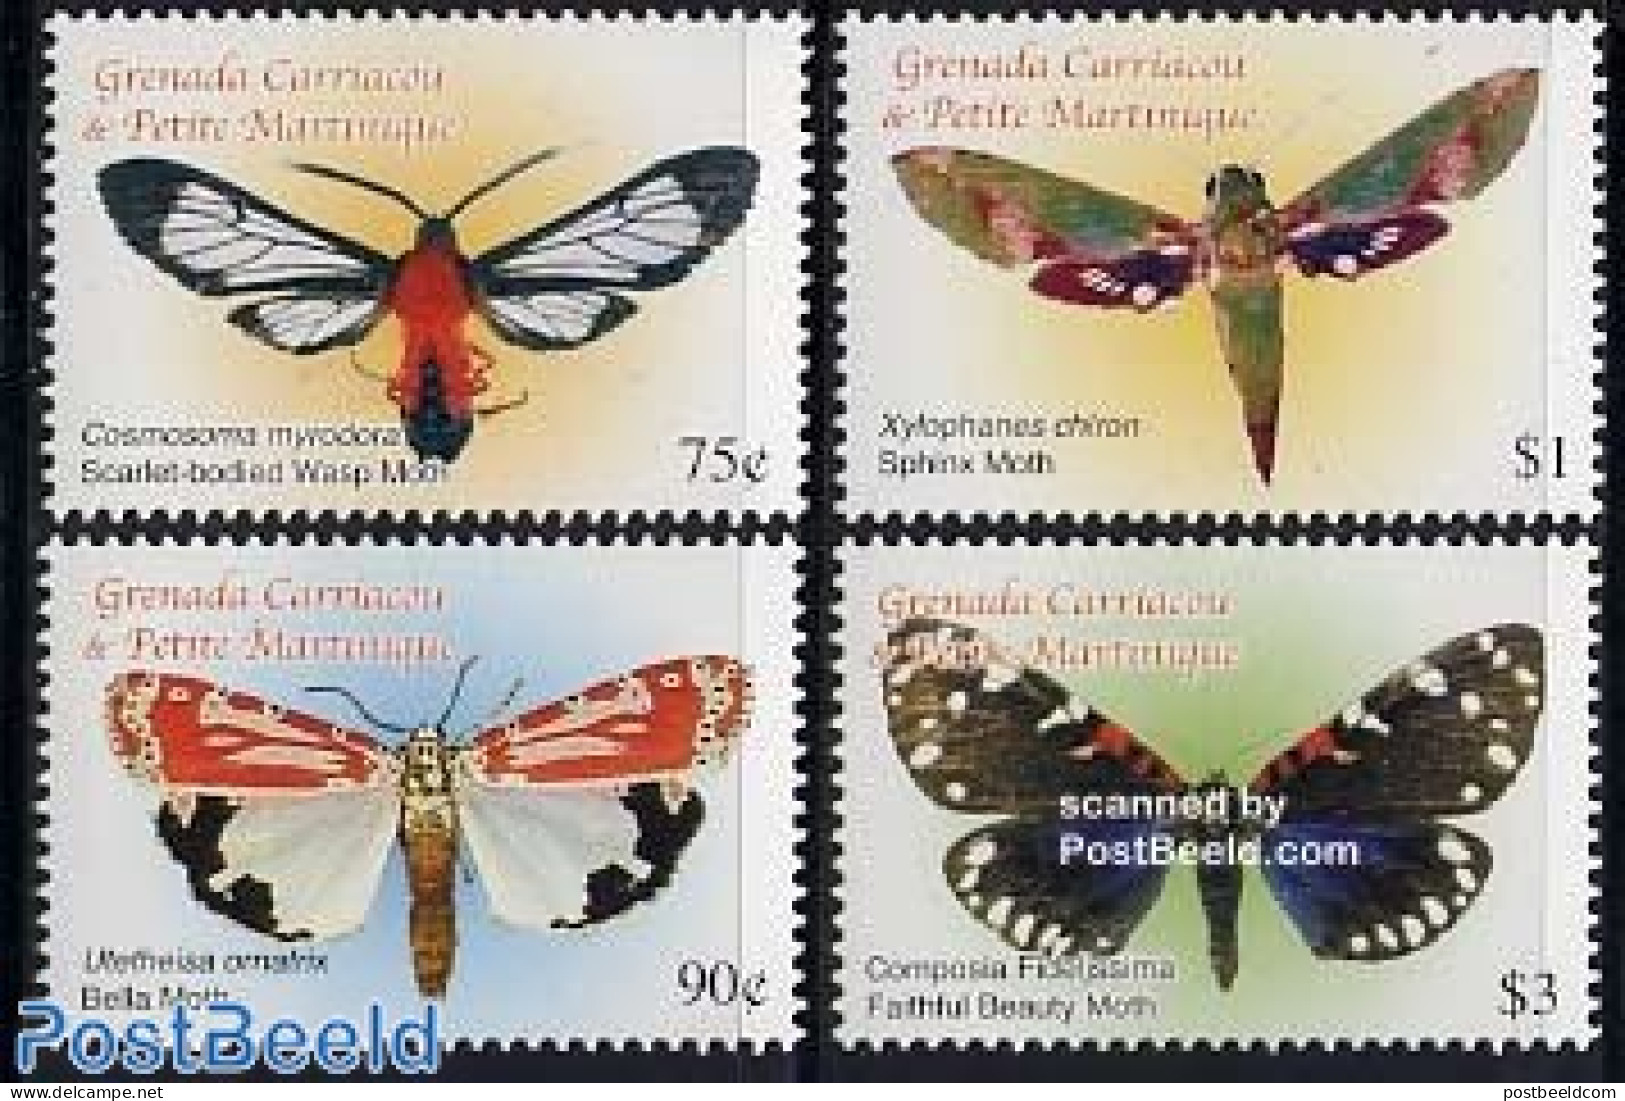 Grenada Grenadines 2005 Moth 4v, Cosmosoma Myrodora, Mint NH, Nature - Butterflies - Grenade (1974-...)